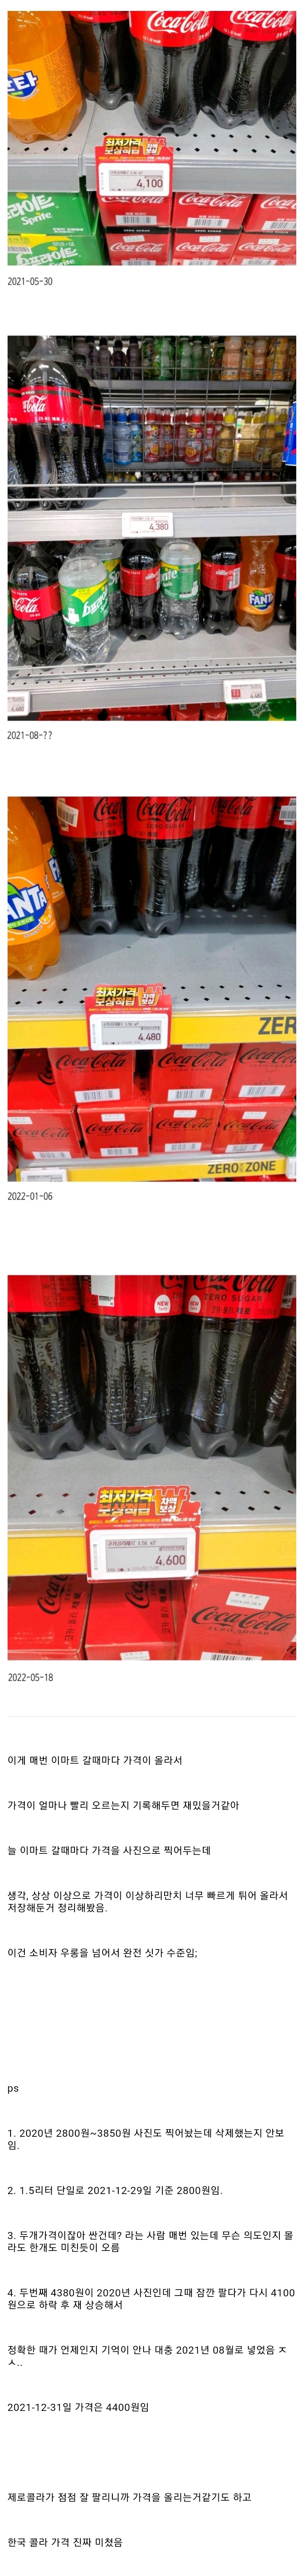 코카콜라 제로 가격상승 속도.jpg